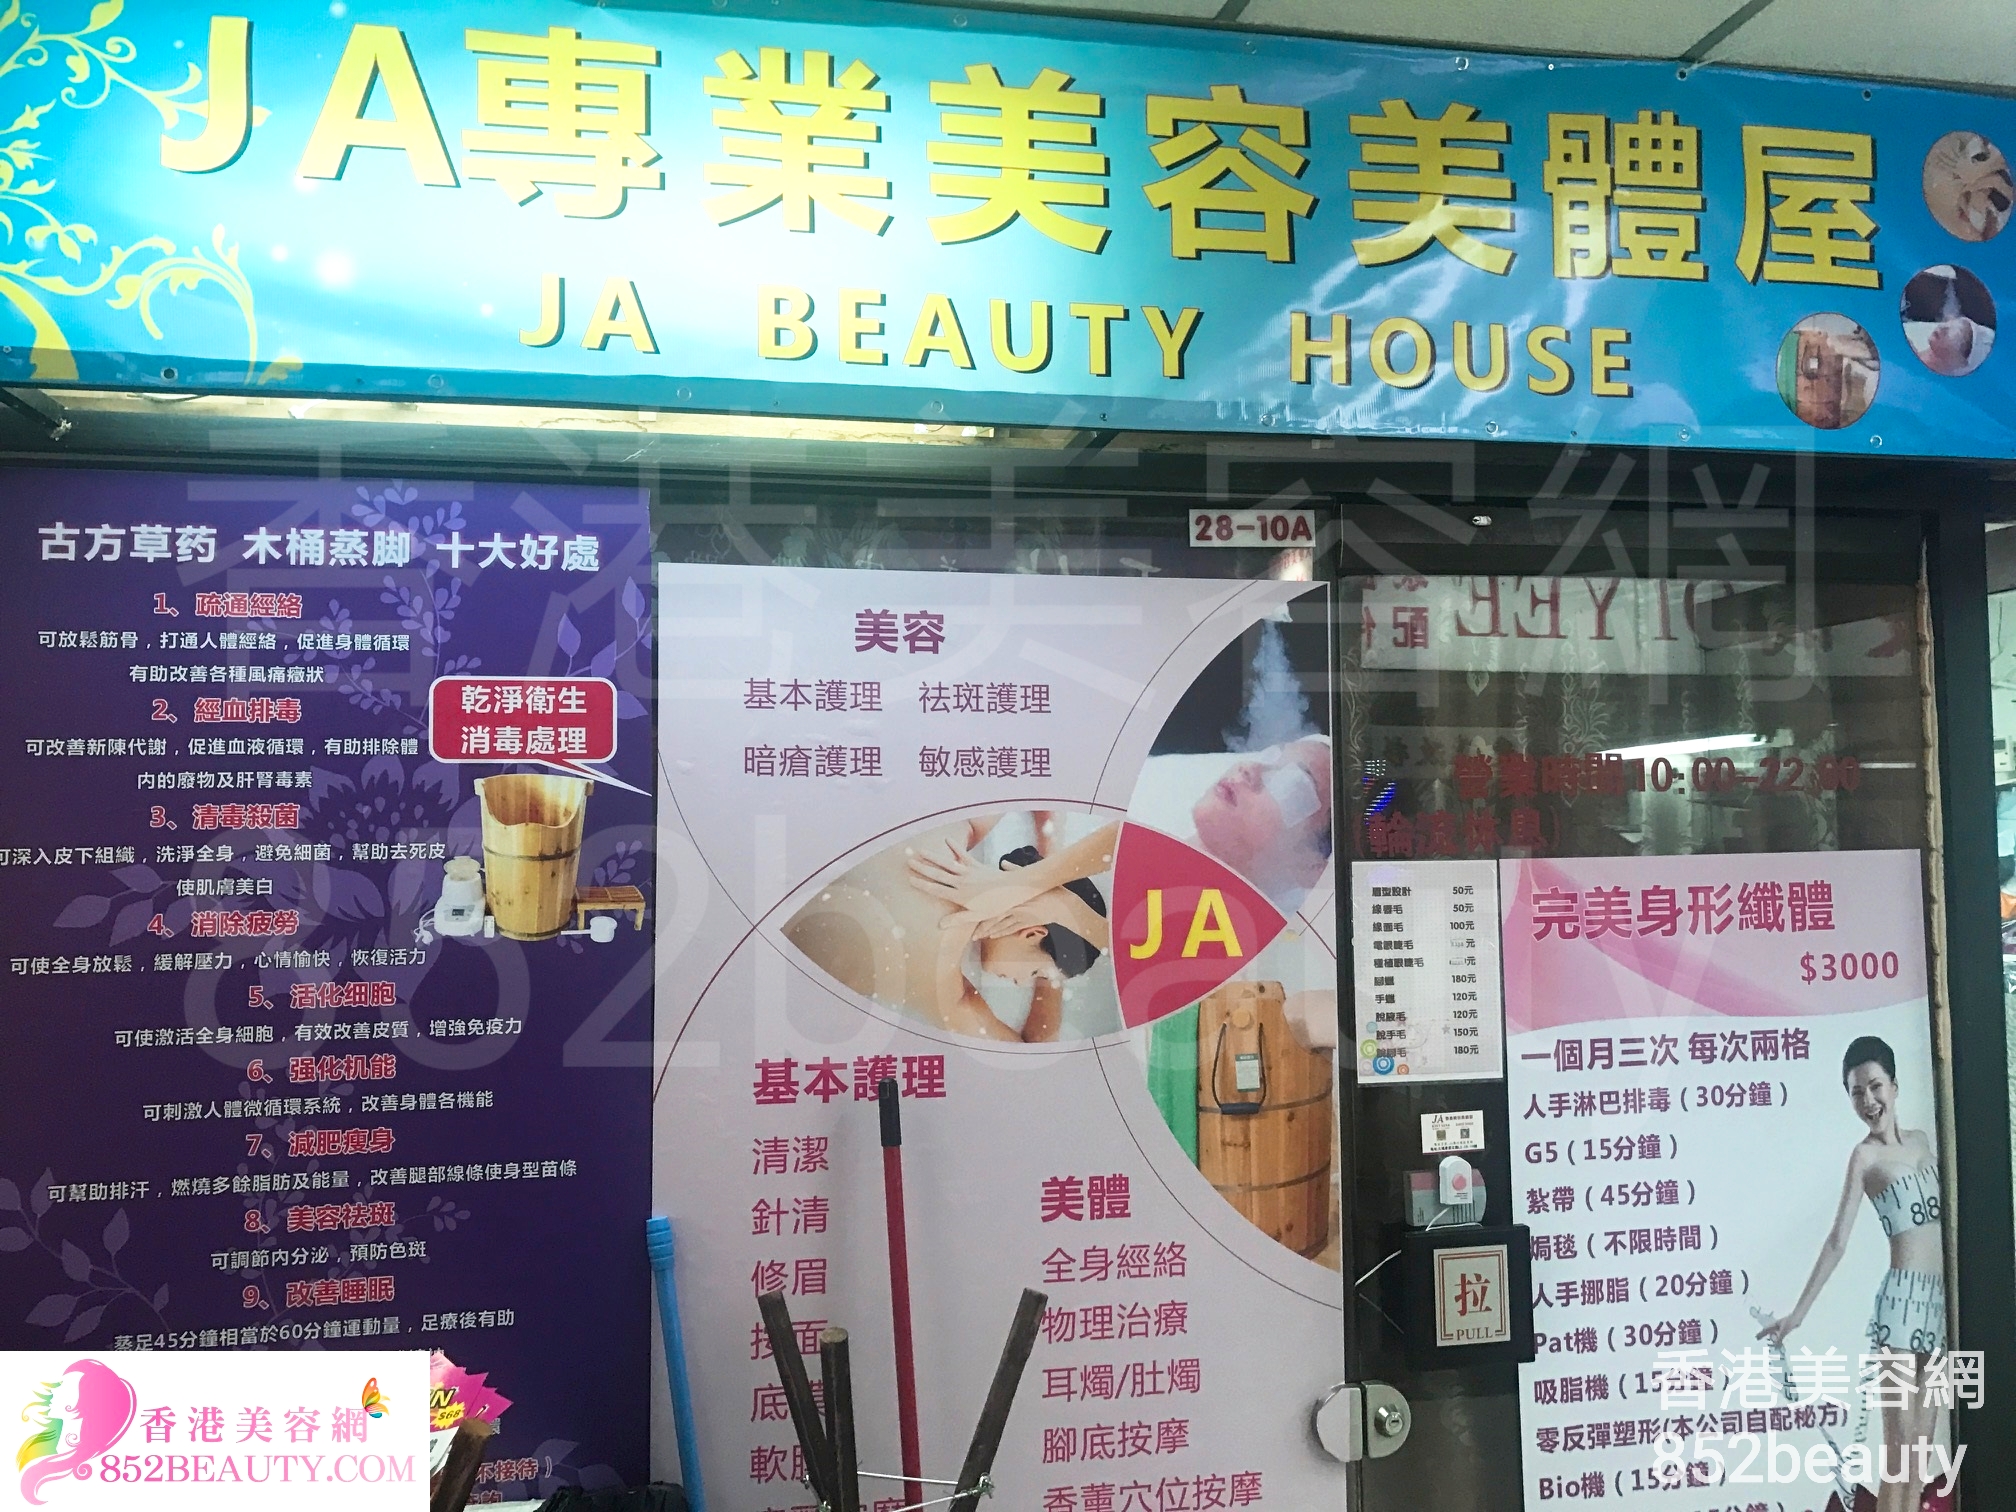 香港美容網 Hong Kong Beauty Salon 美容院 / 美容師: JA專業美容美體屋